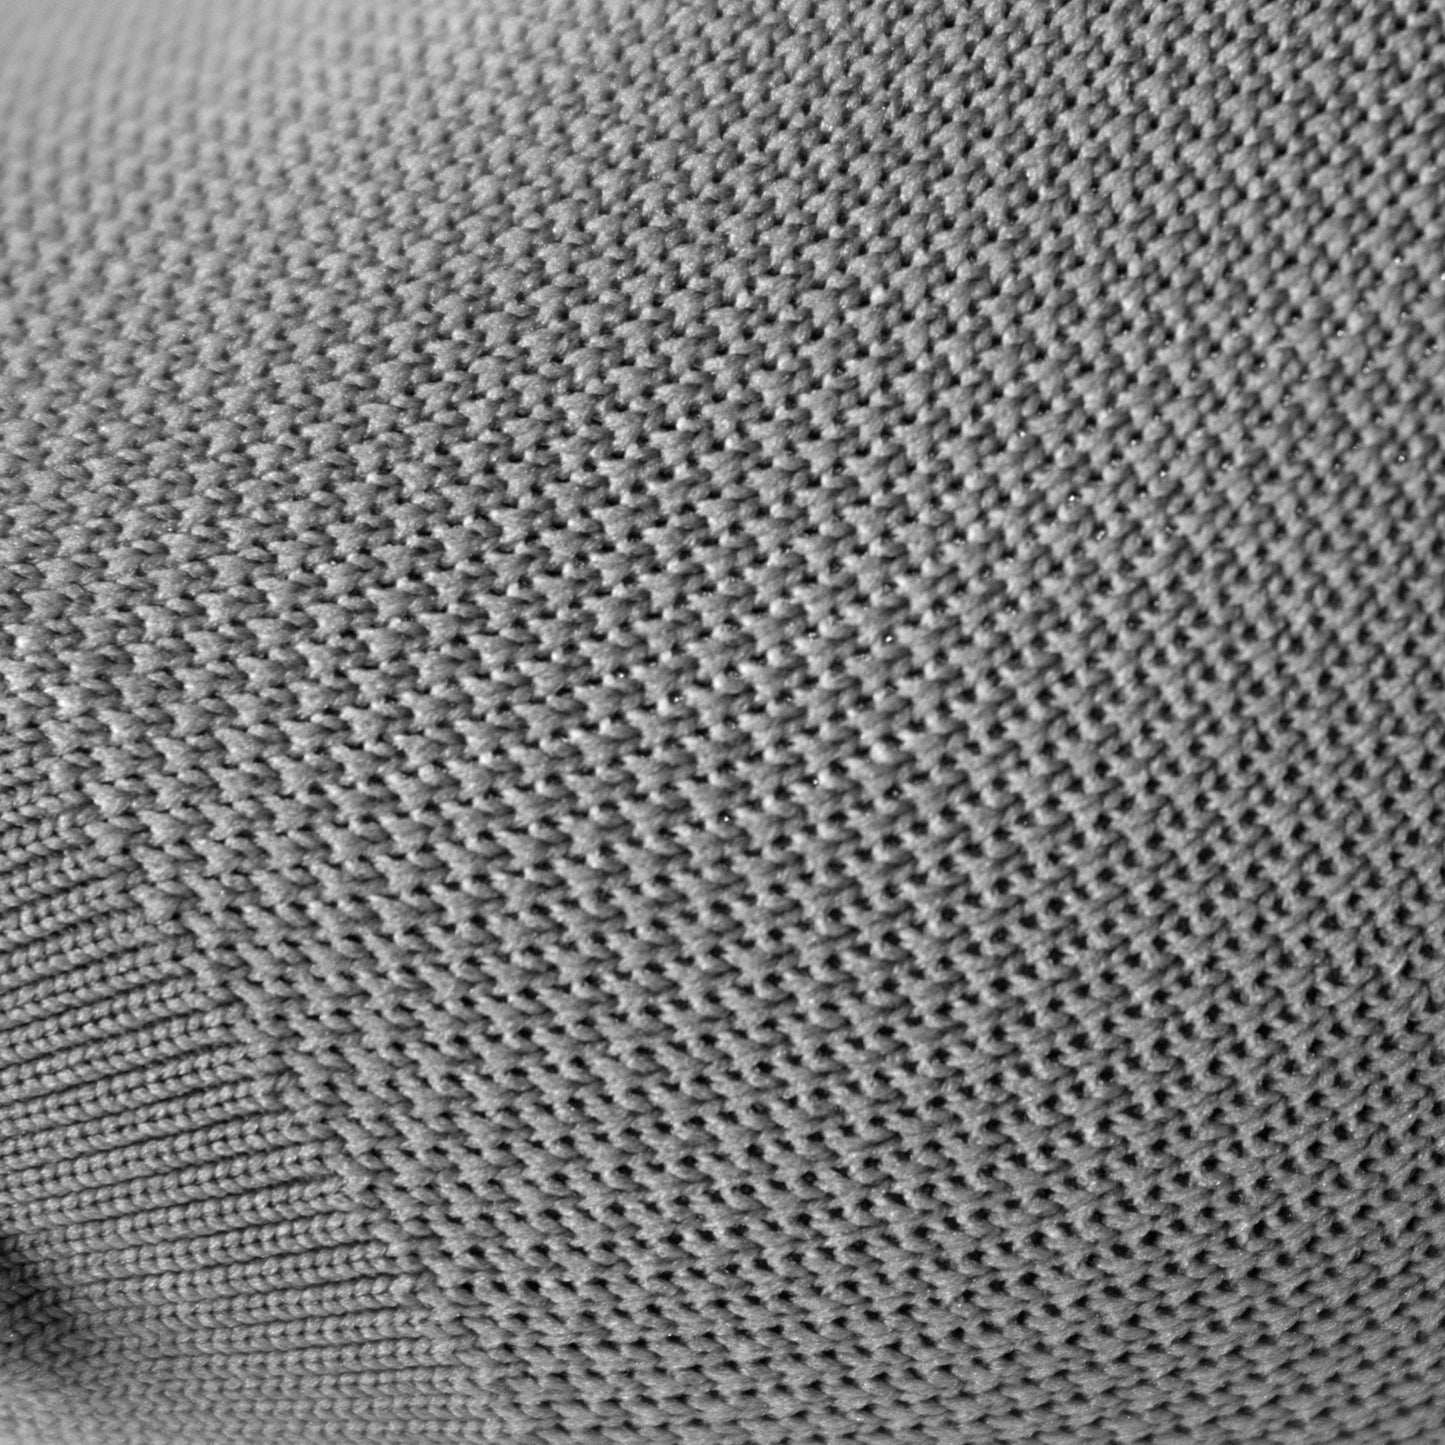 Detalle de tejido en medias de compresión color gris